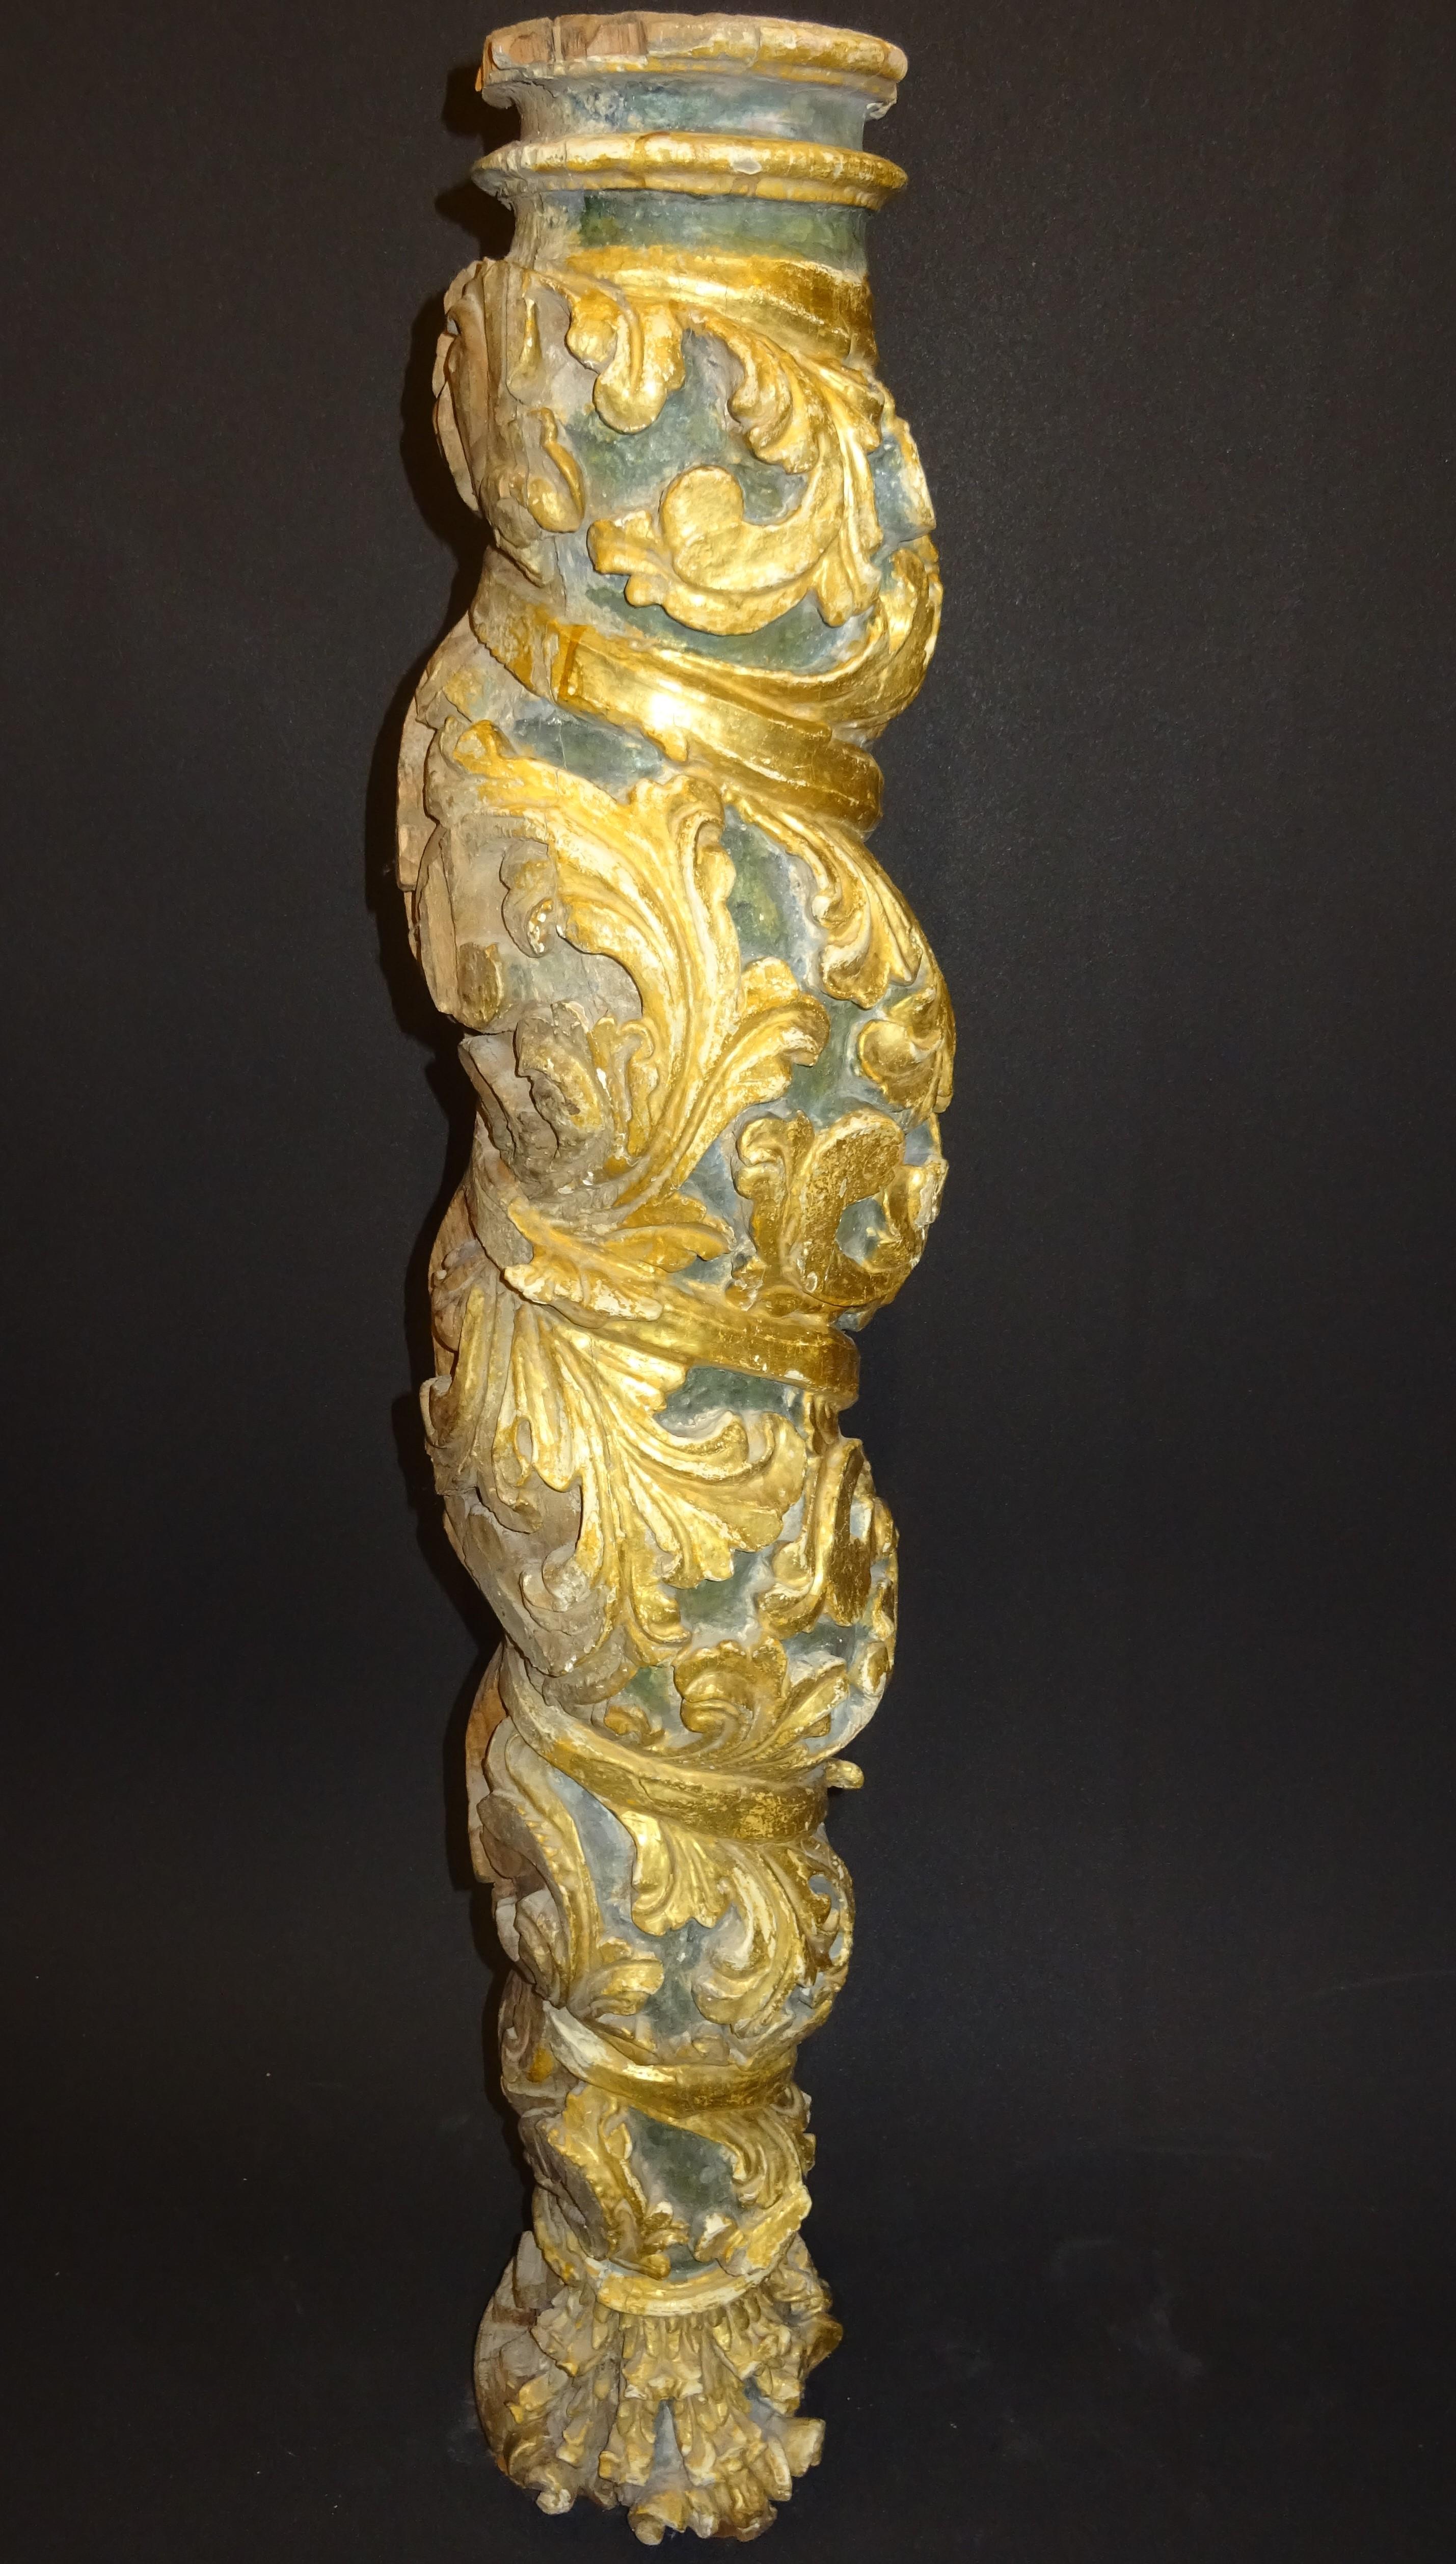 Pièce unique de style baroque espagnol Salomonic en or, polychrome et bois sculpté.
Il s'agit d'une pièce étonnante pour un collectionneur d'art ou pour des intérieurs magnifiques, elle convient pour donner une touche de caractère et d'exquisité à